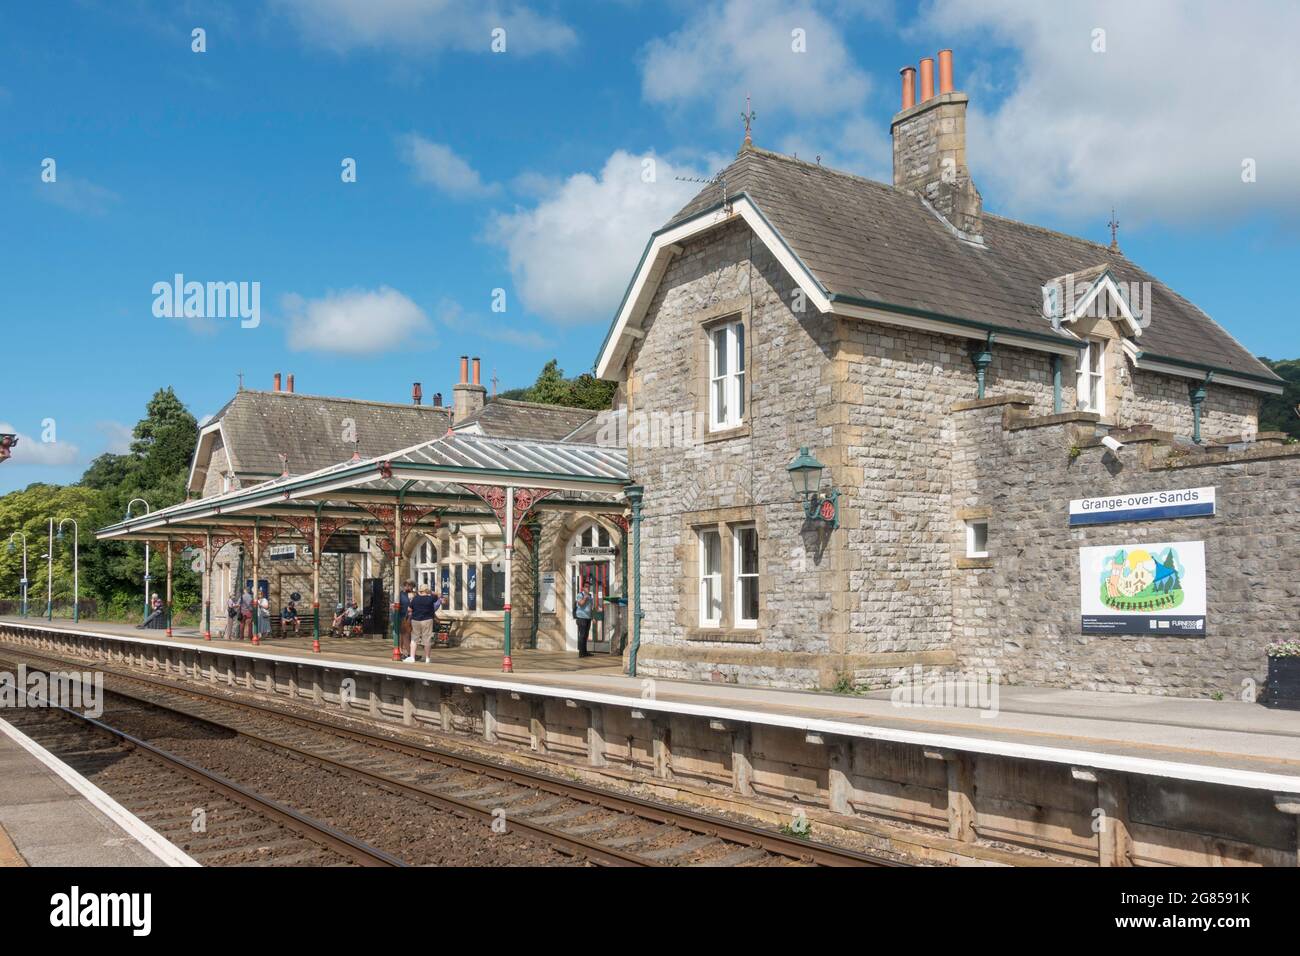 Gente esperando en la estación de tren en Grange over Sands, Cumbria, Inglaterra, Reino Unido Foto de stock